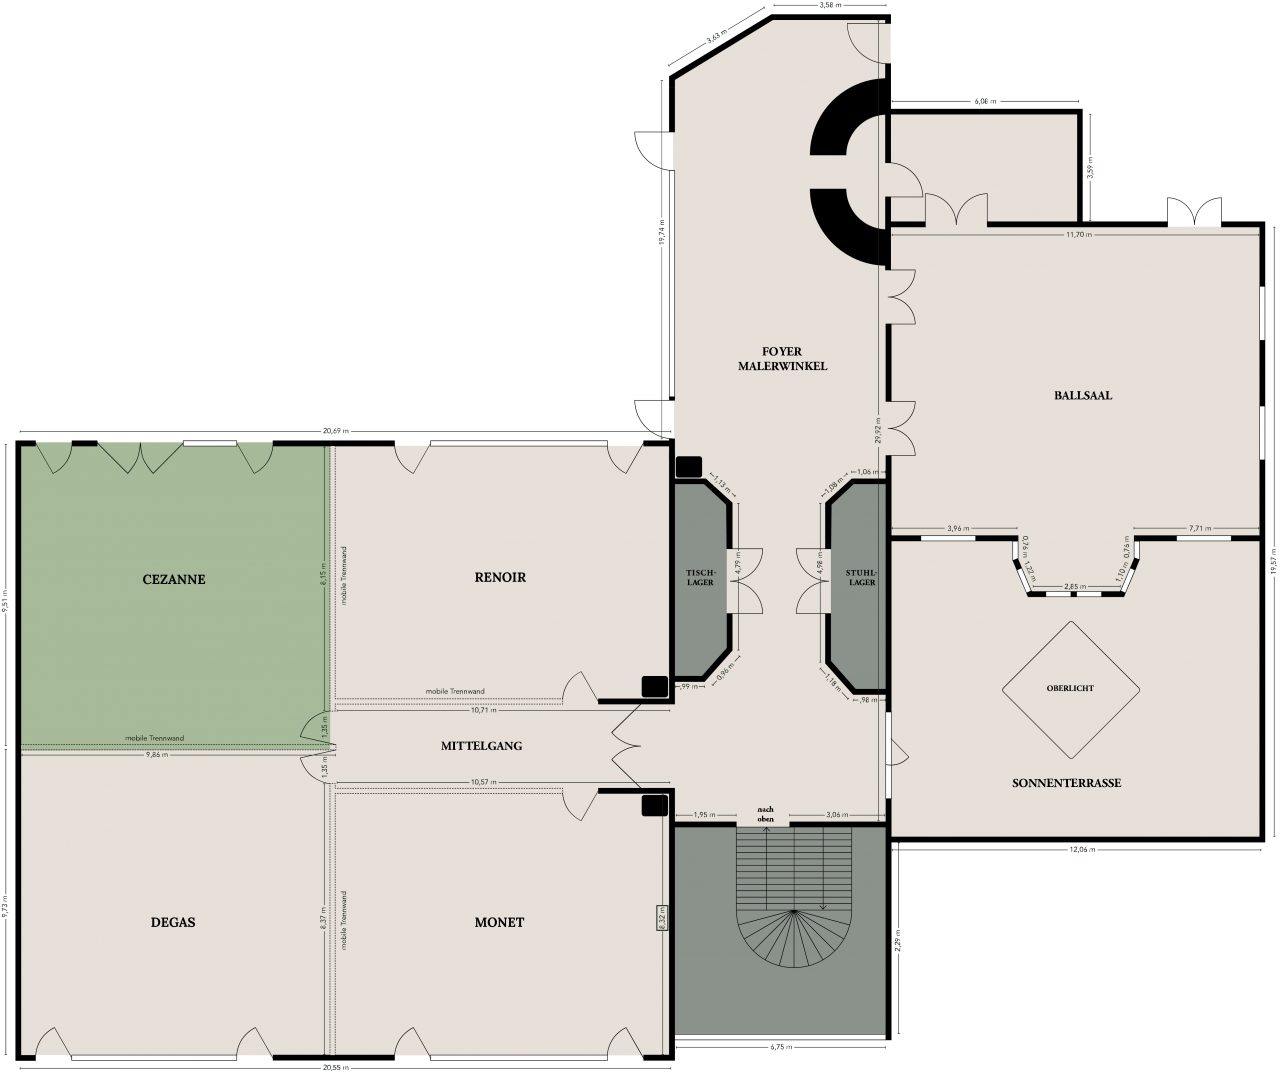 
Cezanne
Bis 80 Personen | 100 m²

